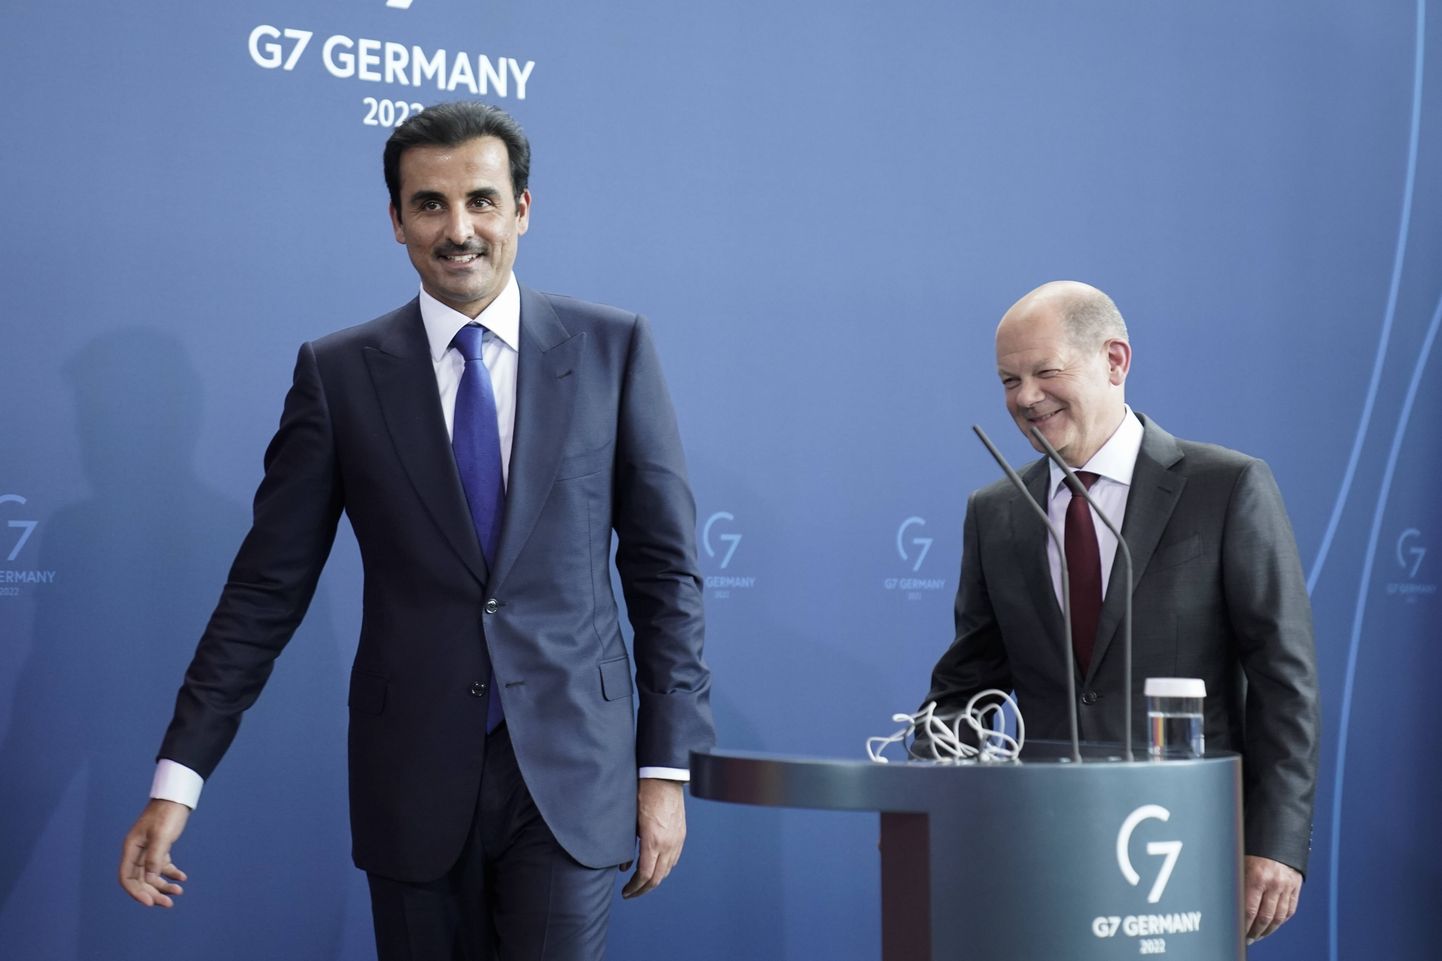 Katari emiir šeik Tamim bin Hamad Al Thani (ees) ja Saksa kantsler Olaf Scholz lahkumas pressikonverentsilt Berliinis 20. mail 2022.